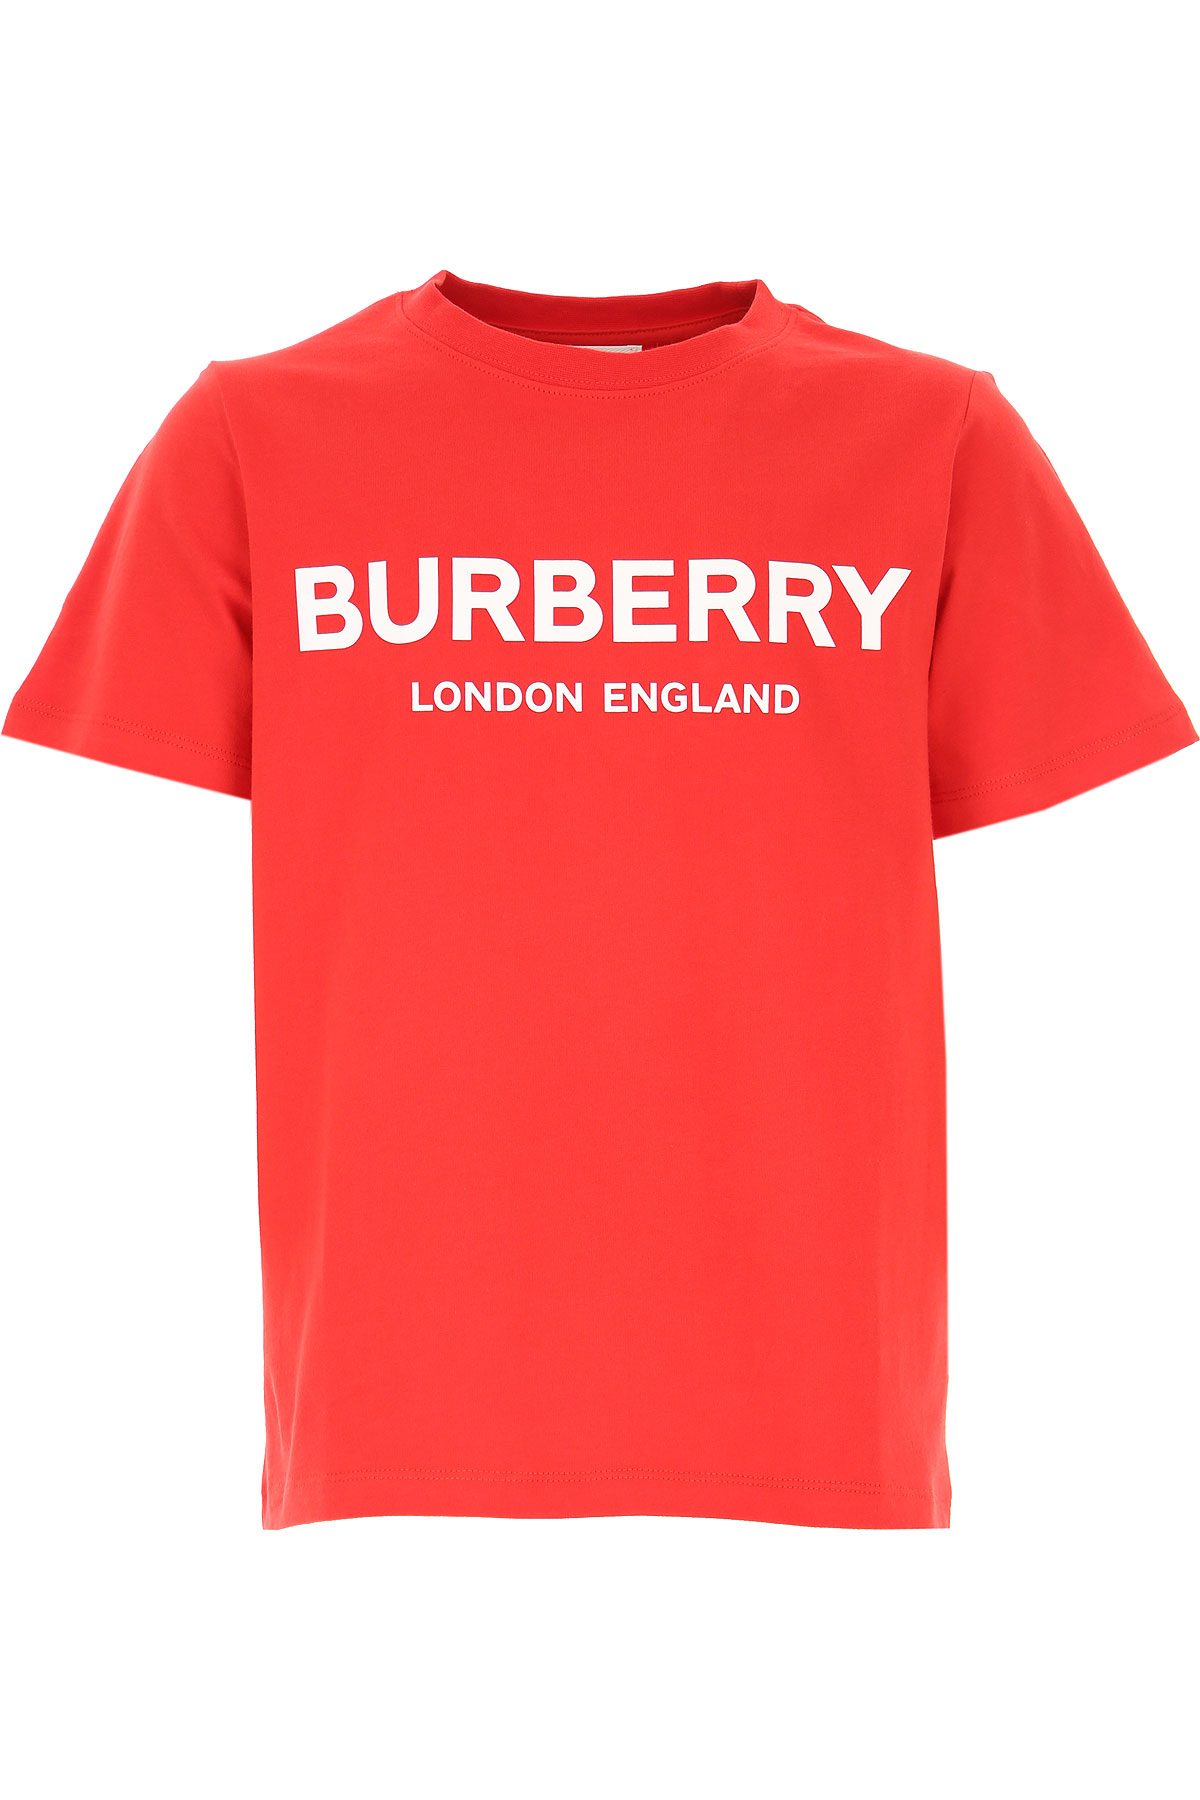 Burberry Kinder T-Shirt für Jungen Günstig im Sale, Rot, Baumwolle, 2017, 10Y 12Y 6Y 8Y